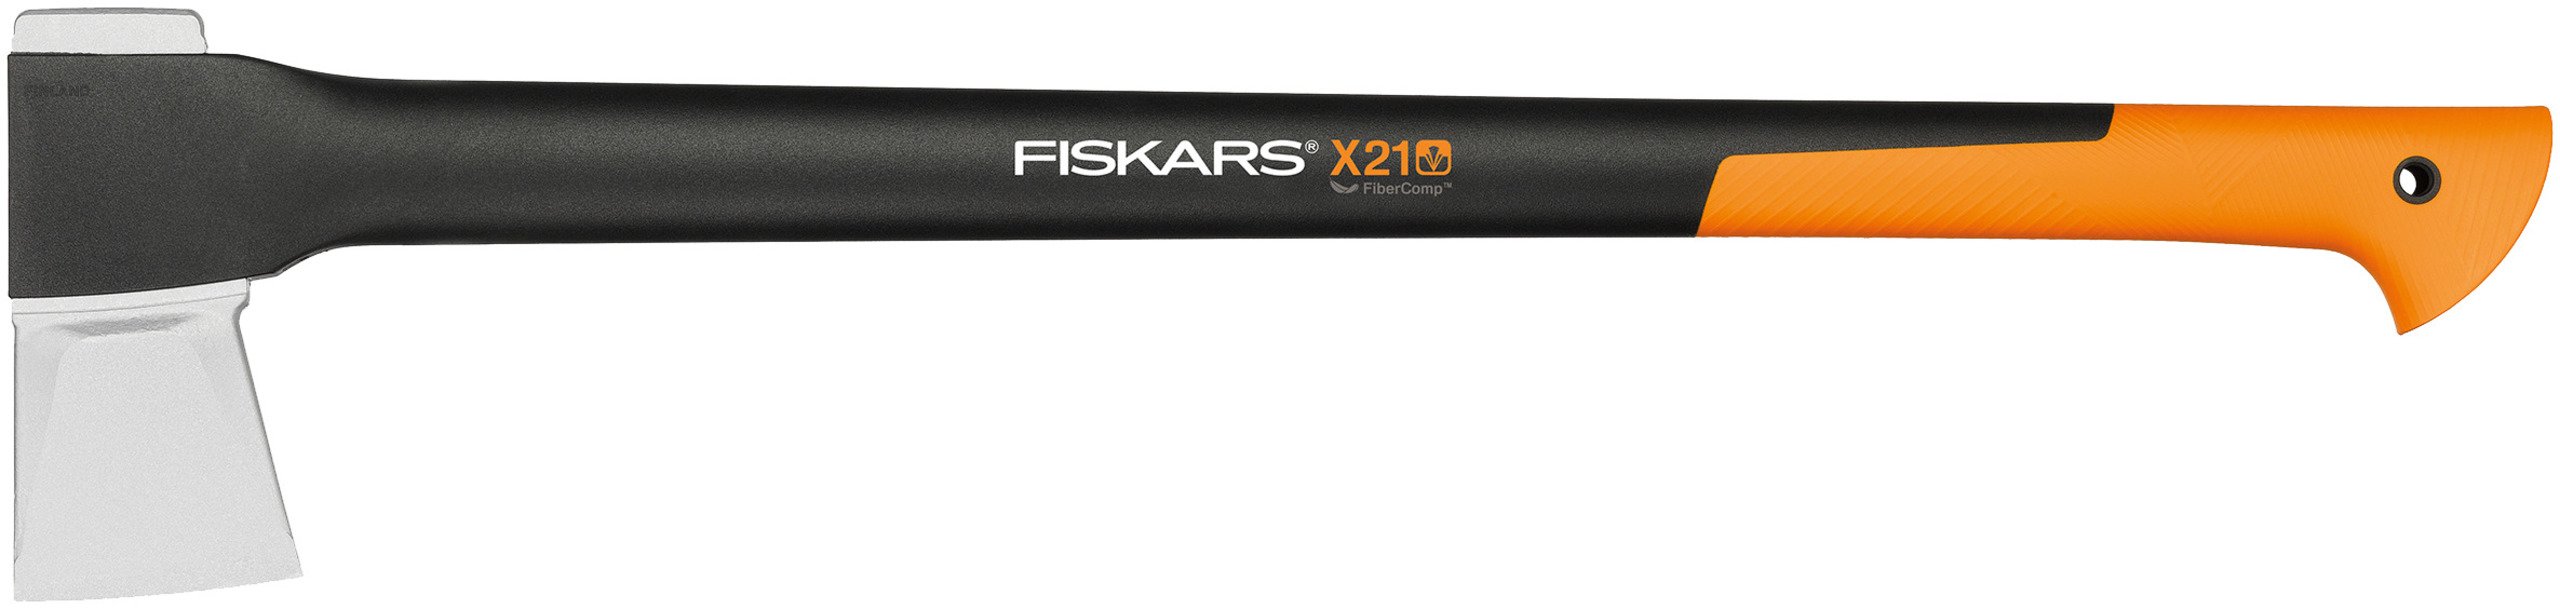 Fiskars Spaltaxt X21 - Größe L